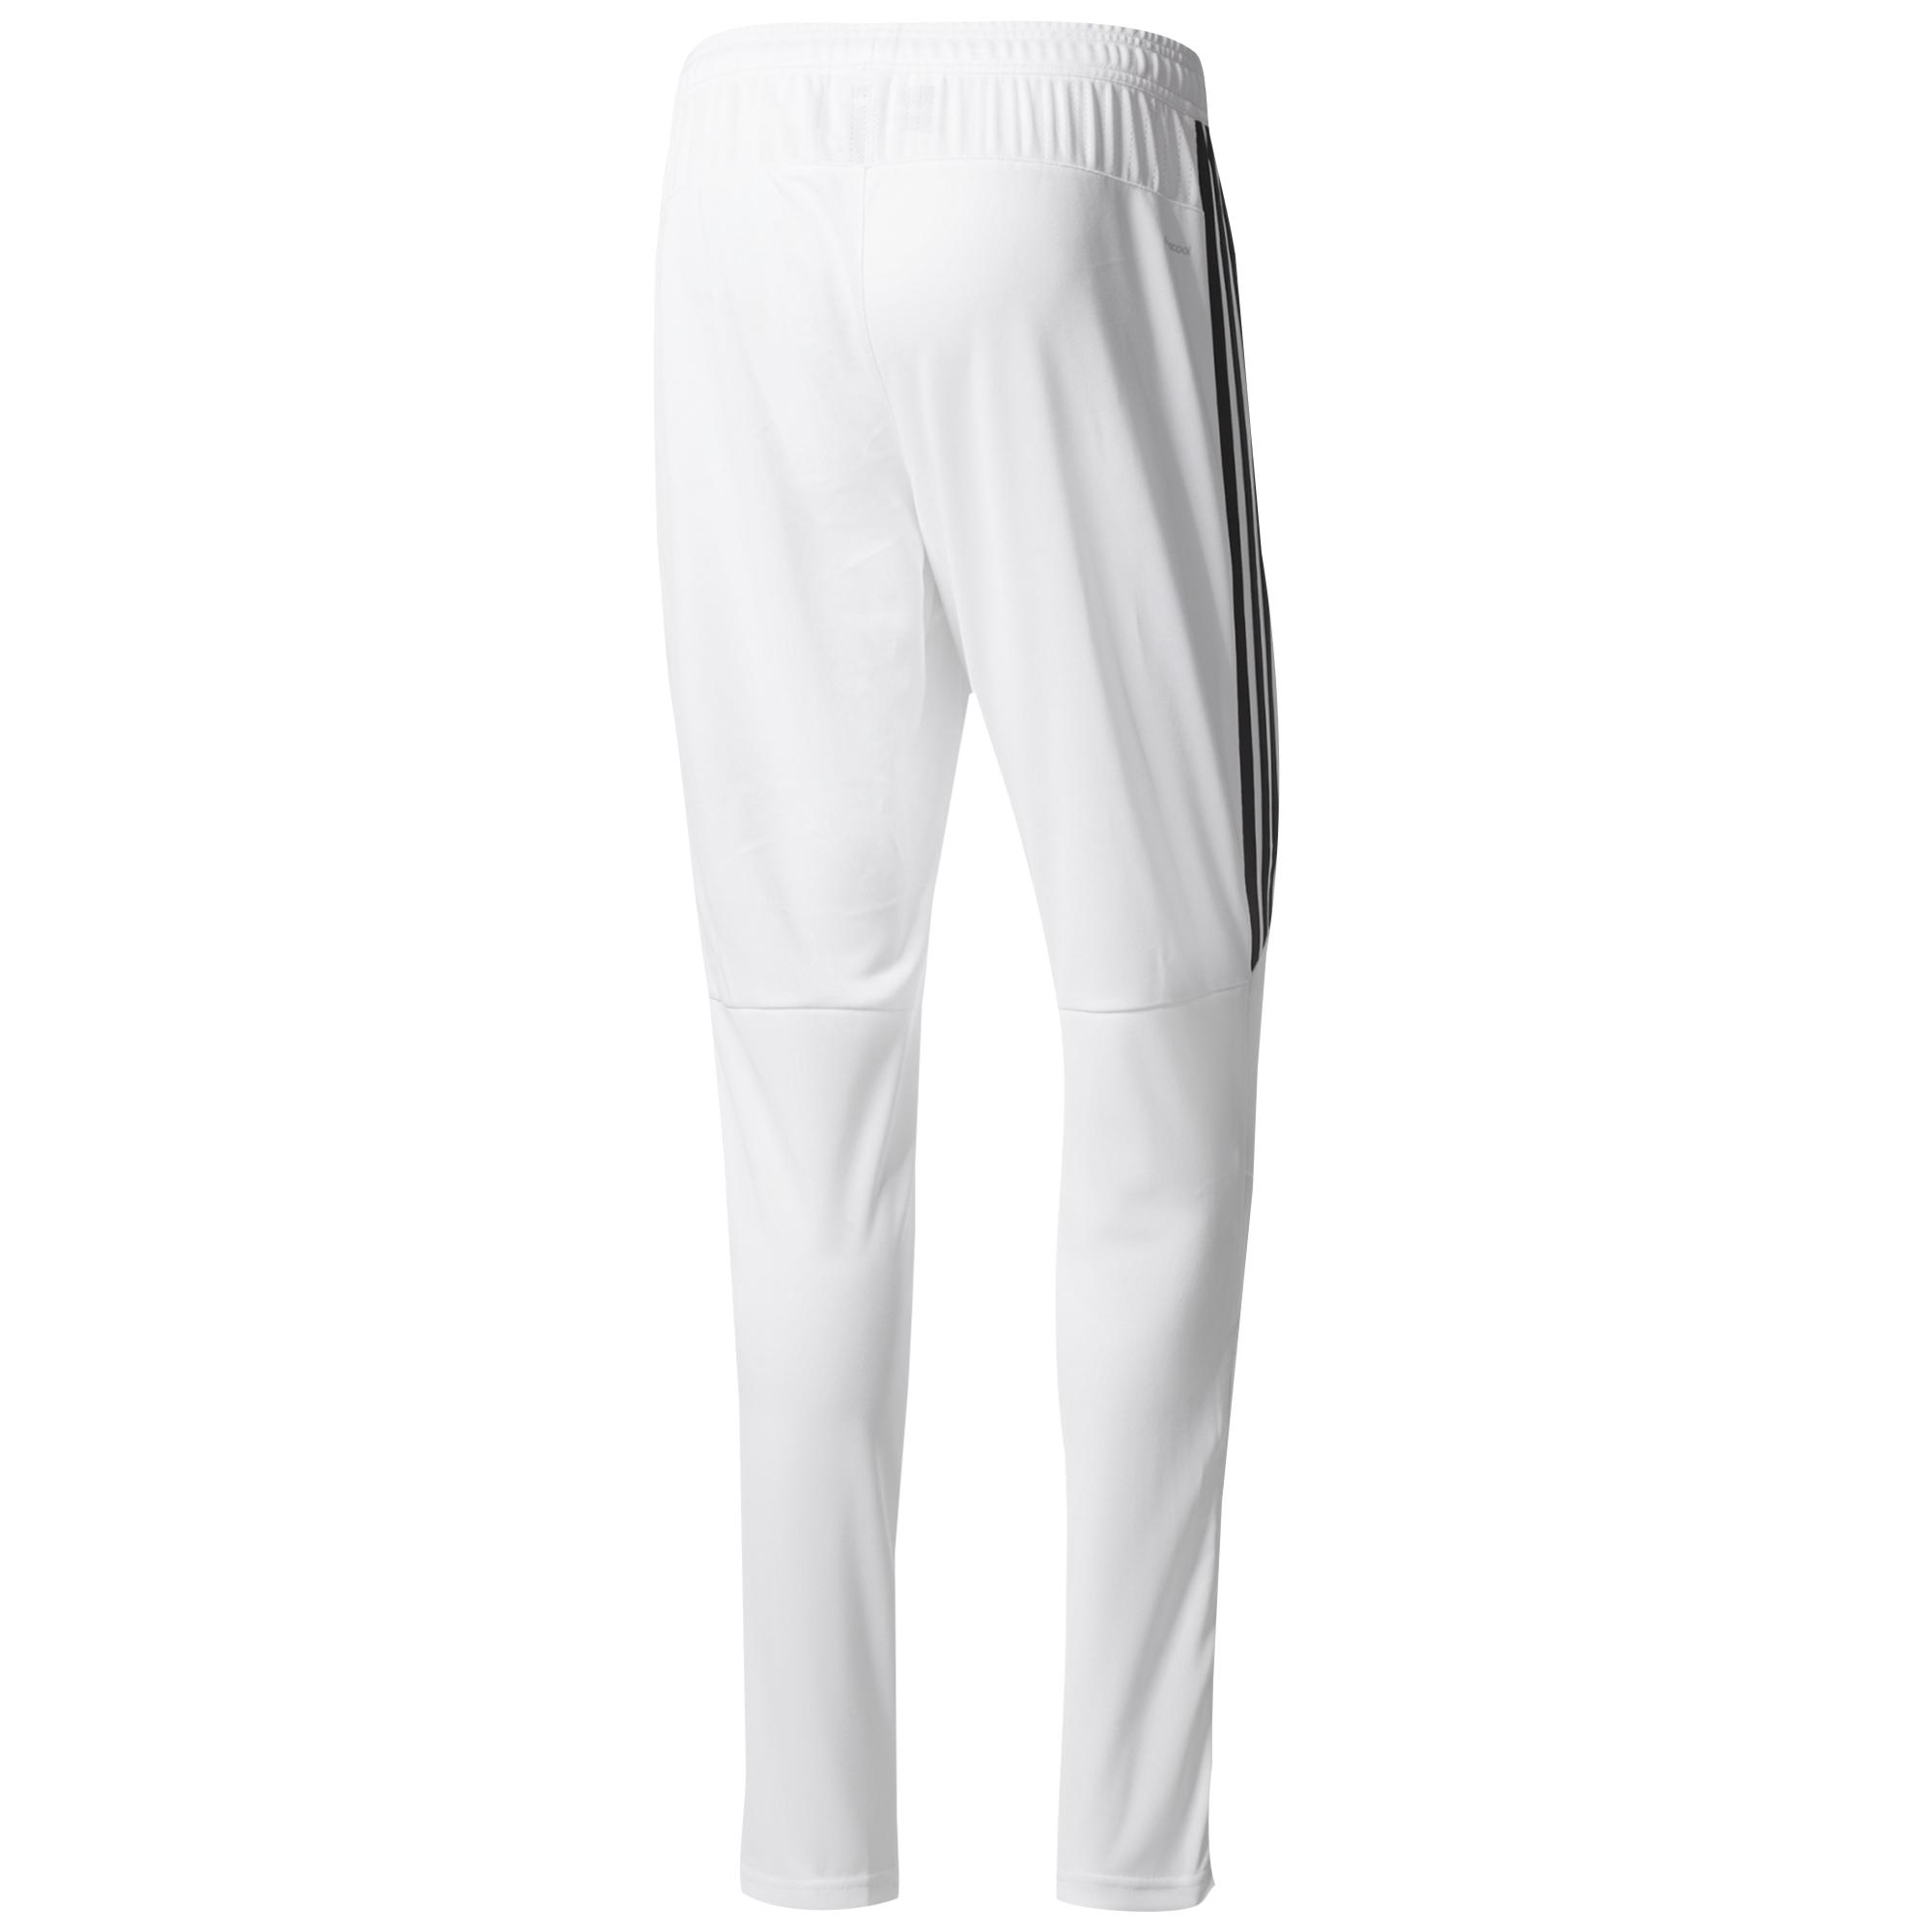 adidas Tiro 17 Pants in White for Men - Lyst